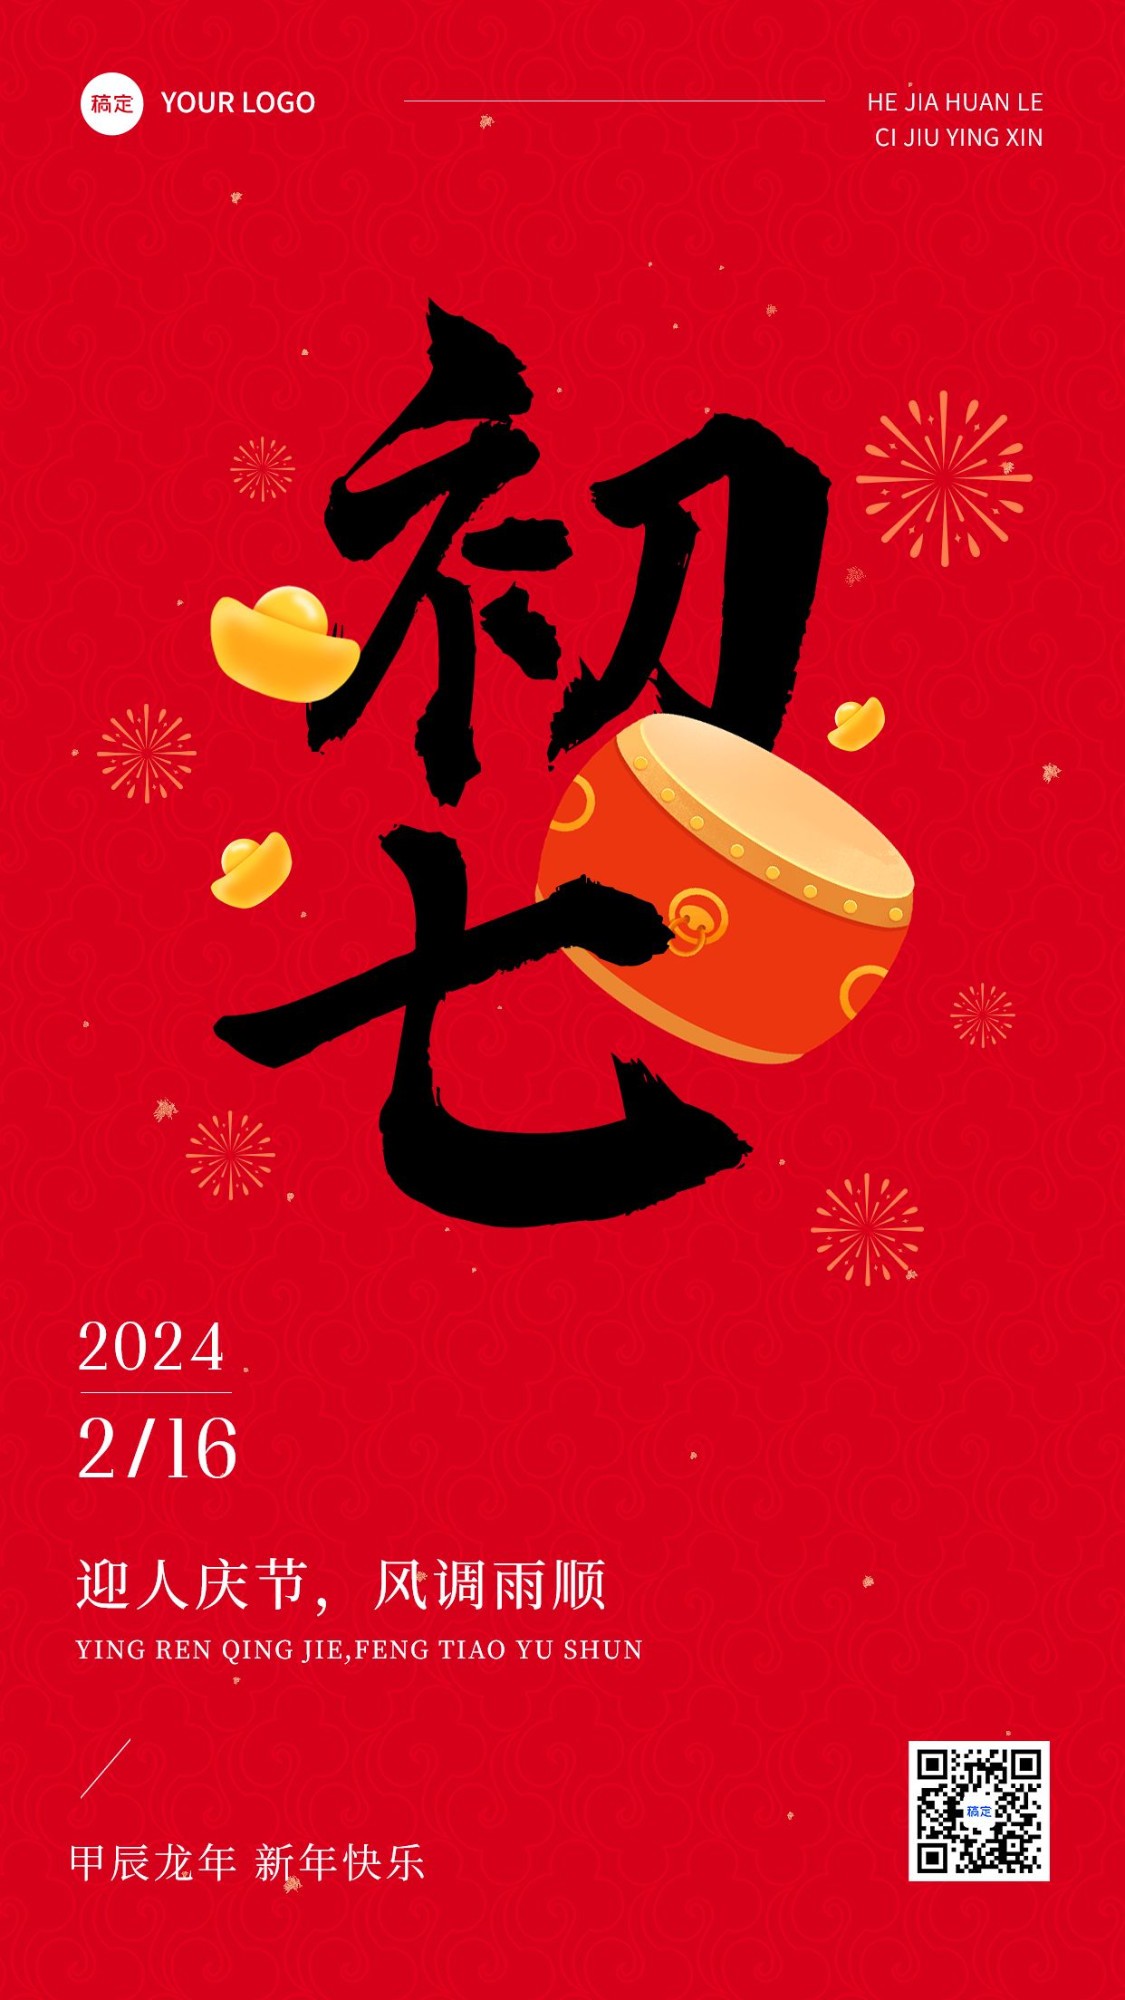 春节正月初七拜年祝福套系手机海报预览效果